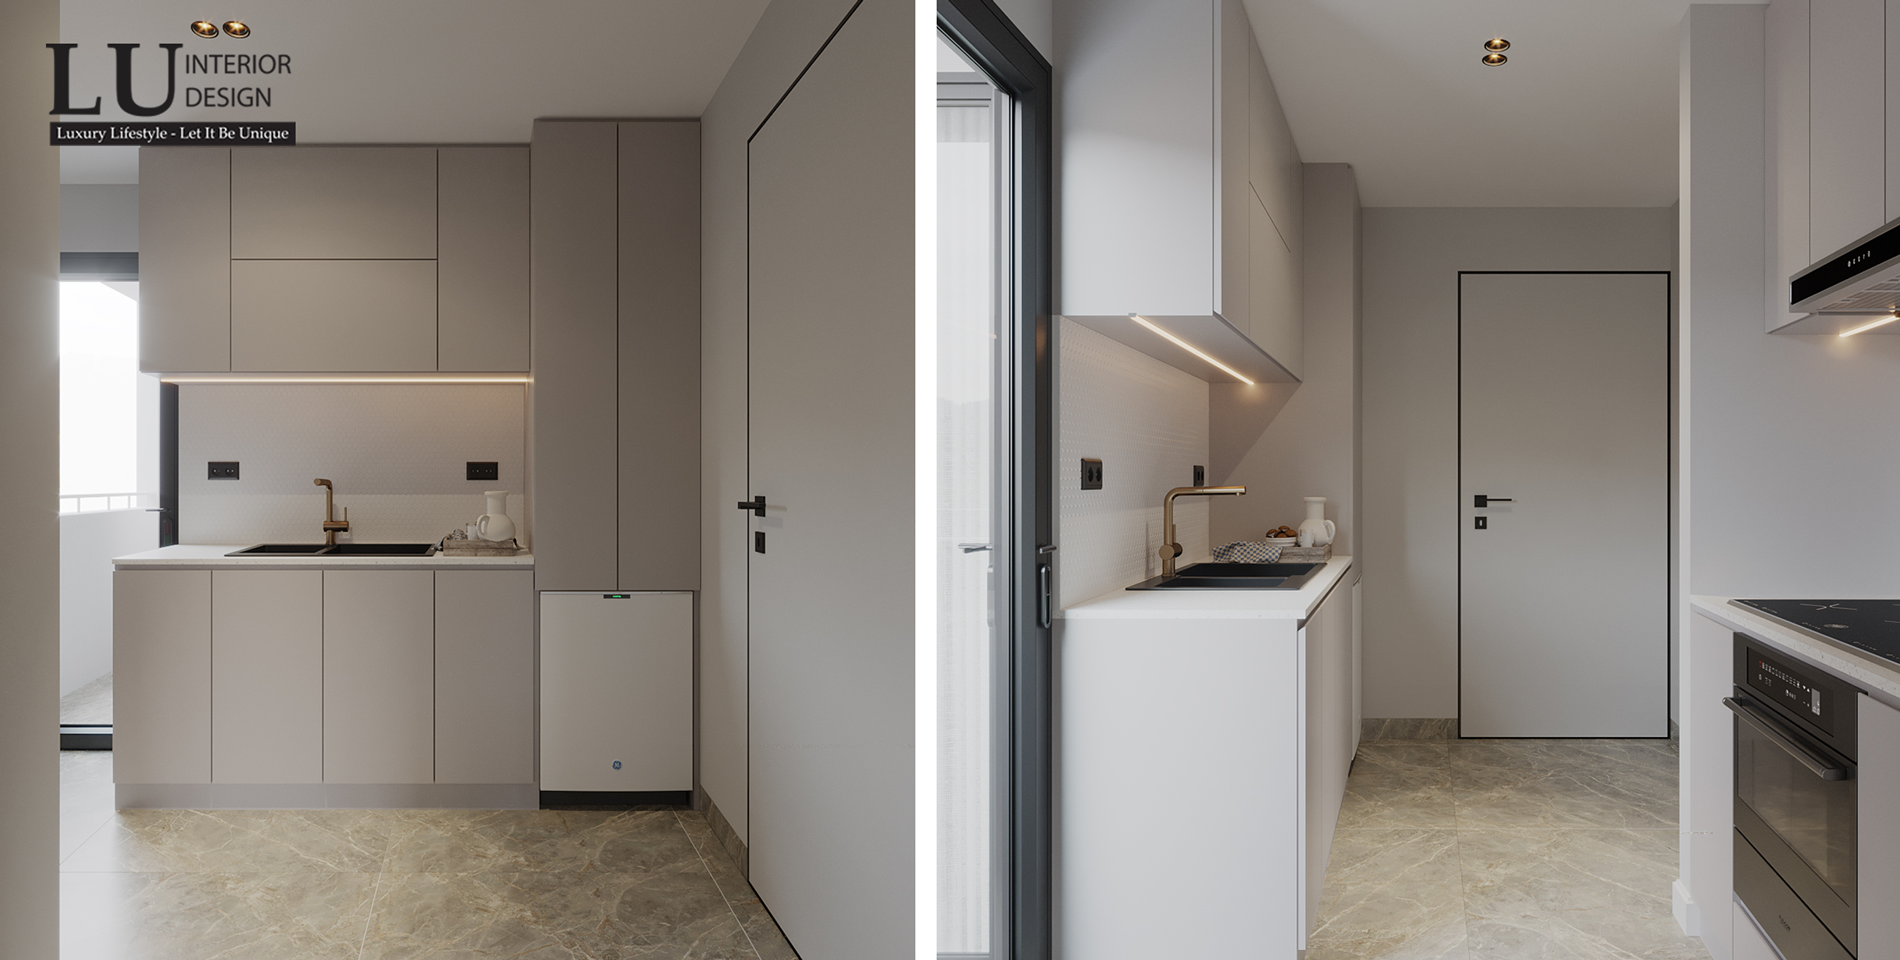 Về cách bố trí, KTS đã đặt bếp nấu gần với khu vực ban công và ngăn cách với không gian sinh hoạt bằng 1 cánh cửa để hạn chế mùi, giúp không khí lưu thông tốt. Ảnh: Căn hộ Thảo Điền - LU Design